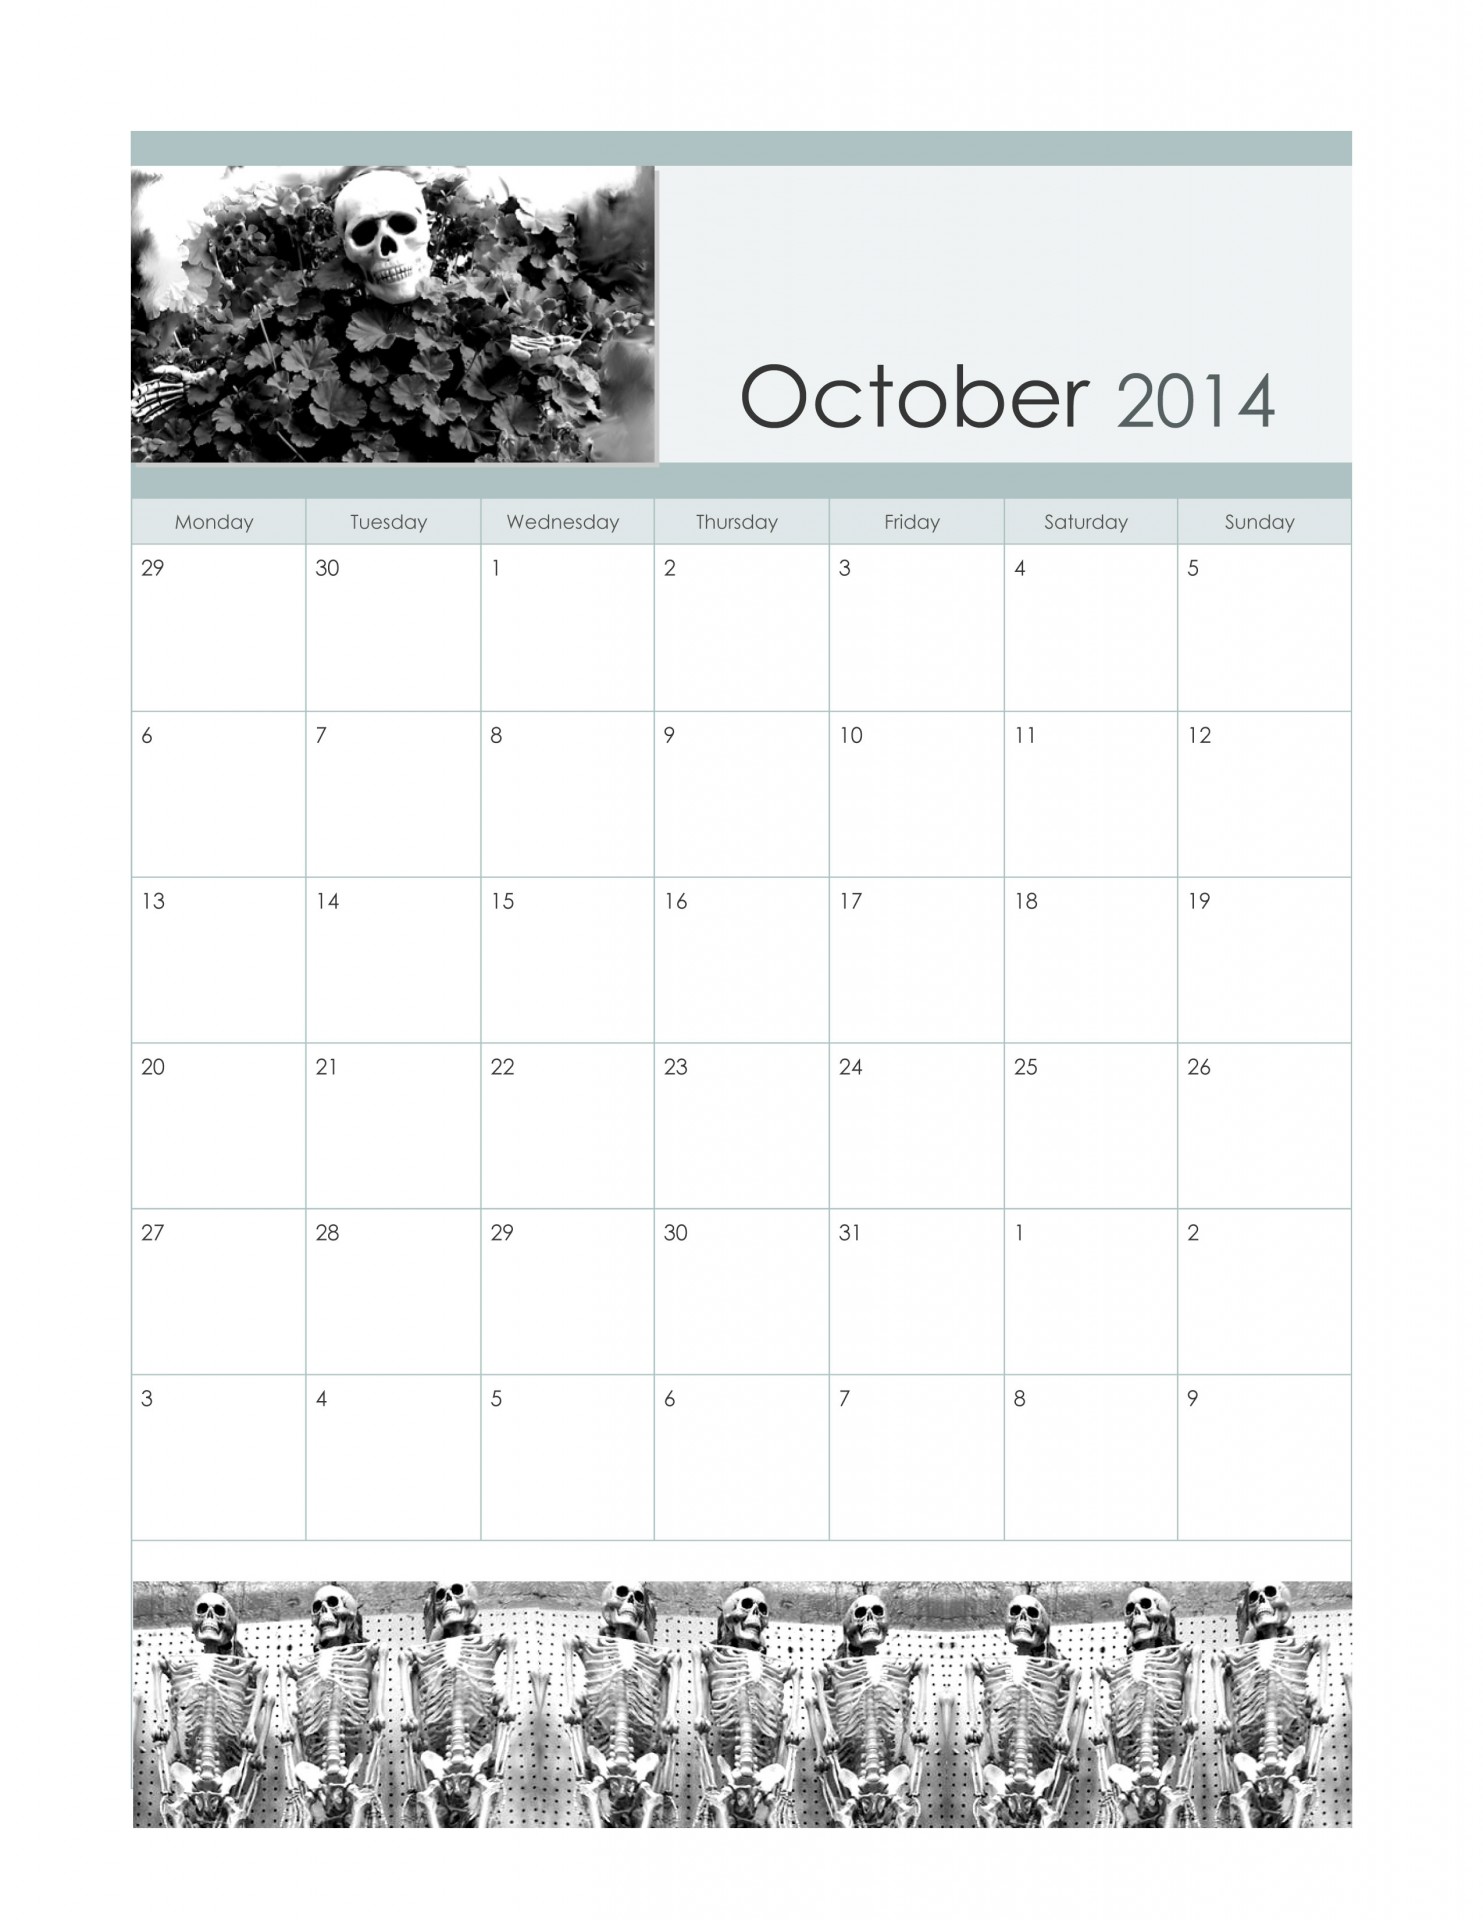 Octombrie 2014 calendar schelet